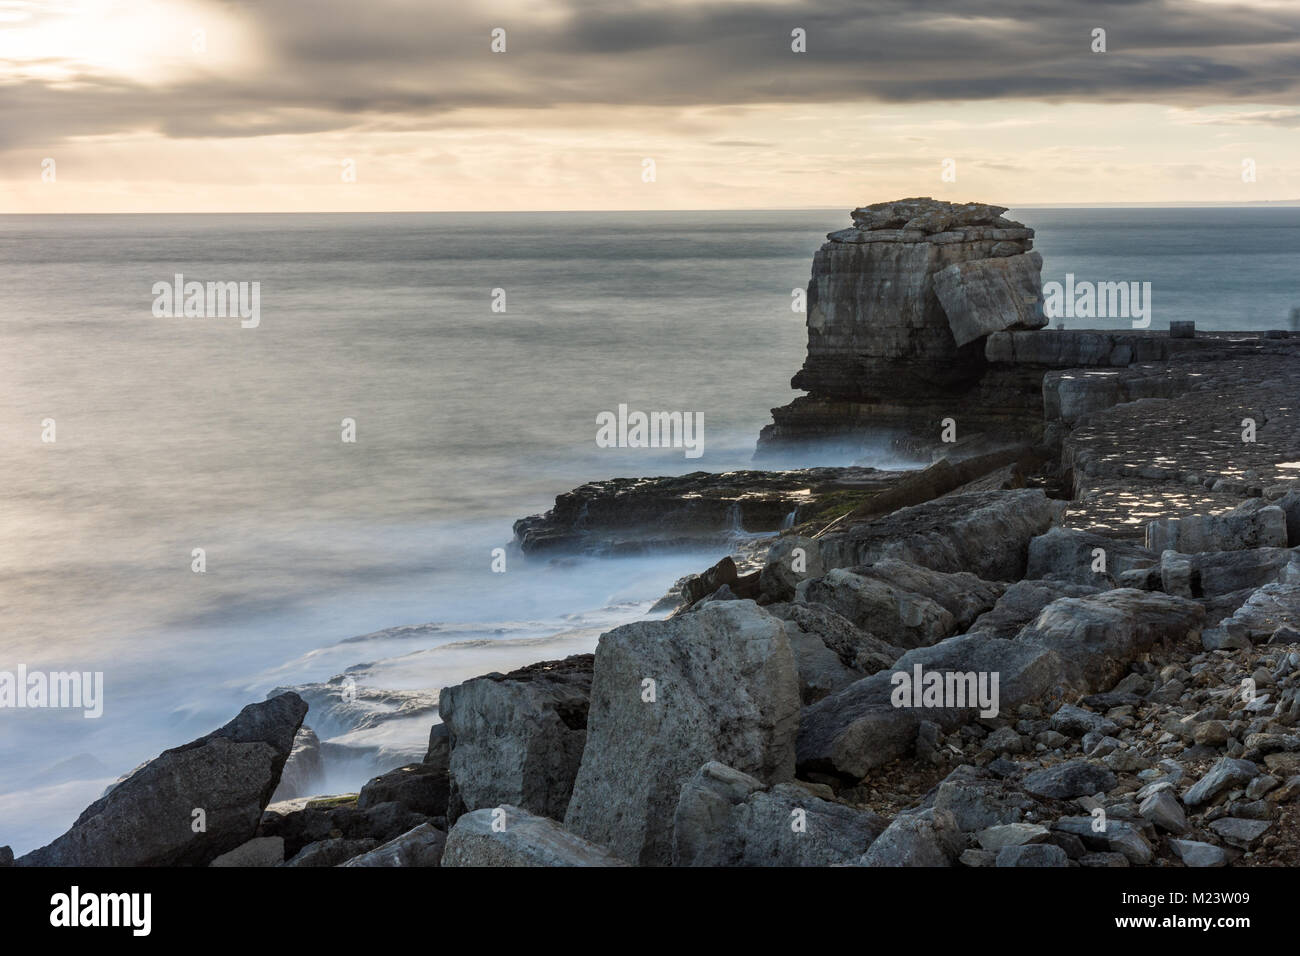 Le soleil se couche derrière Pulpit Rock, une pile de calcaire sur l'extrait côte de Portland Bill dans Dorset sur la côte jurassique de l'Angleterre. Banque D'Images